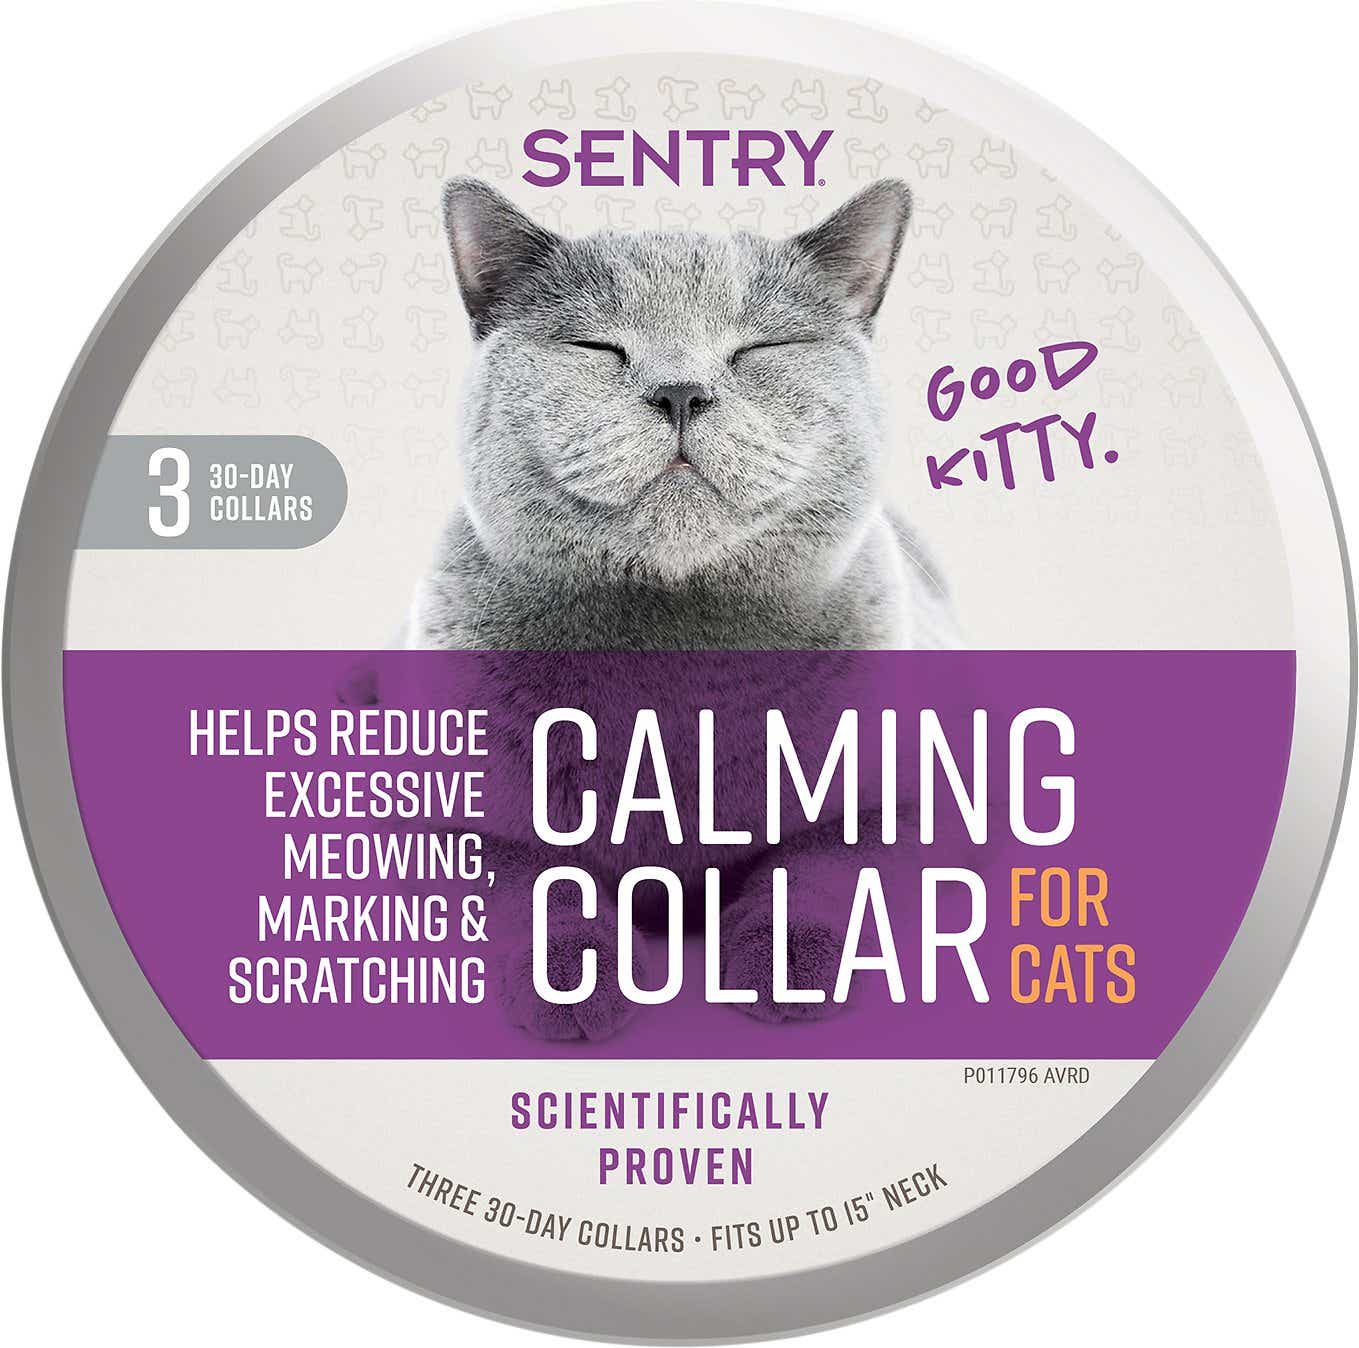 Sentry Good Behavior Calming Collar